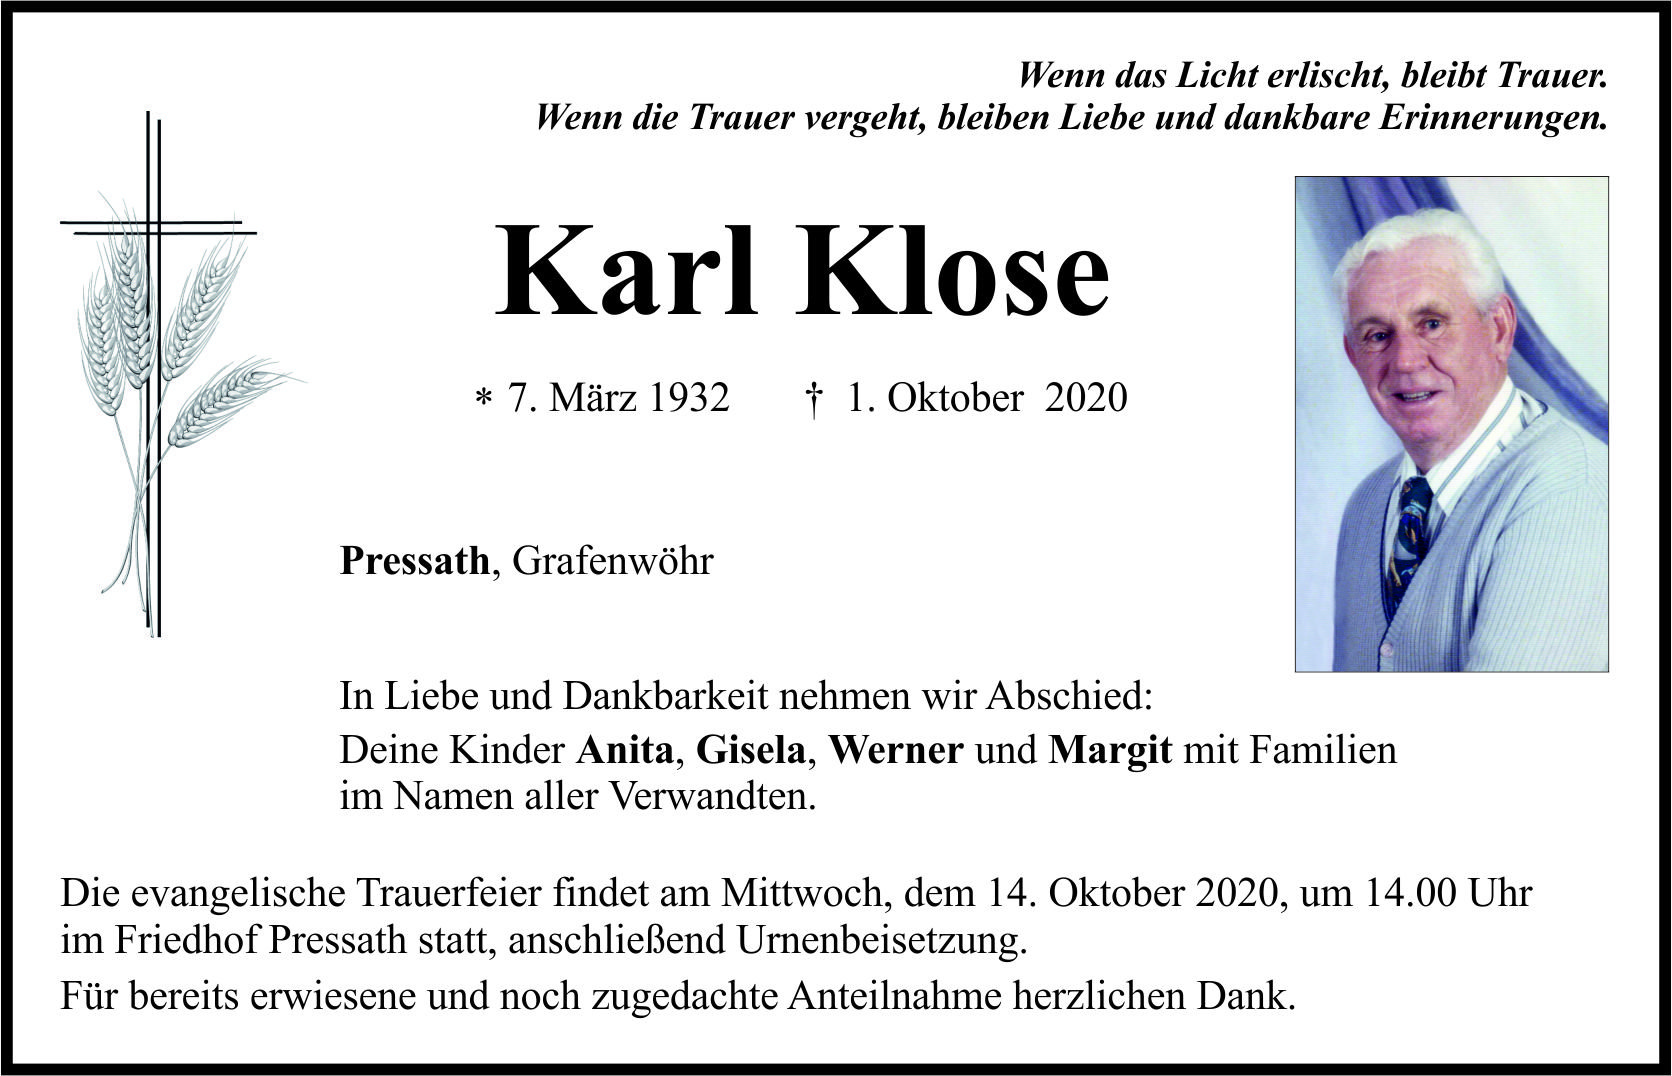 Traueranzeige Karl Klose, Pressath